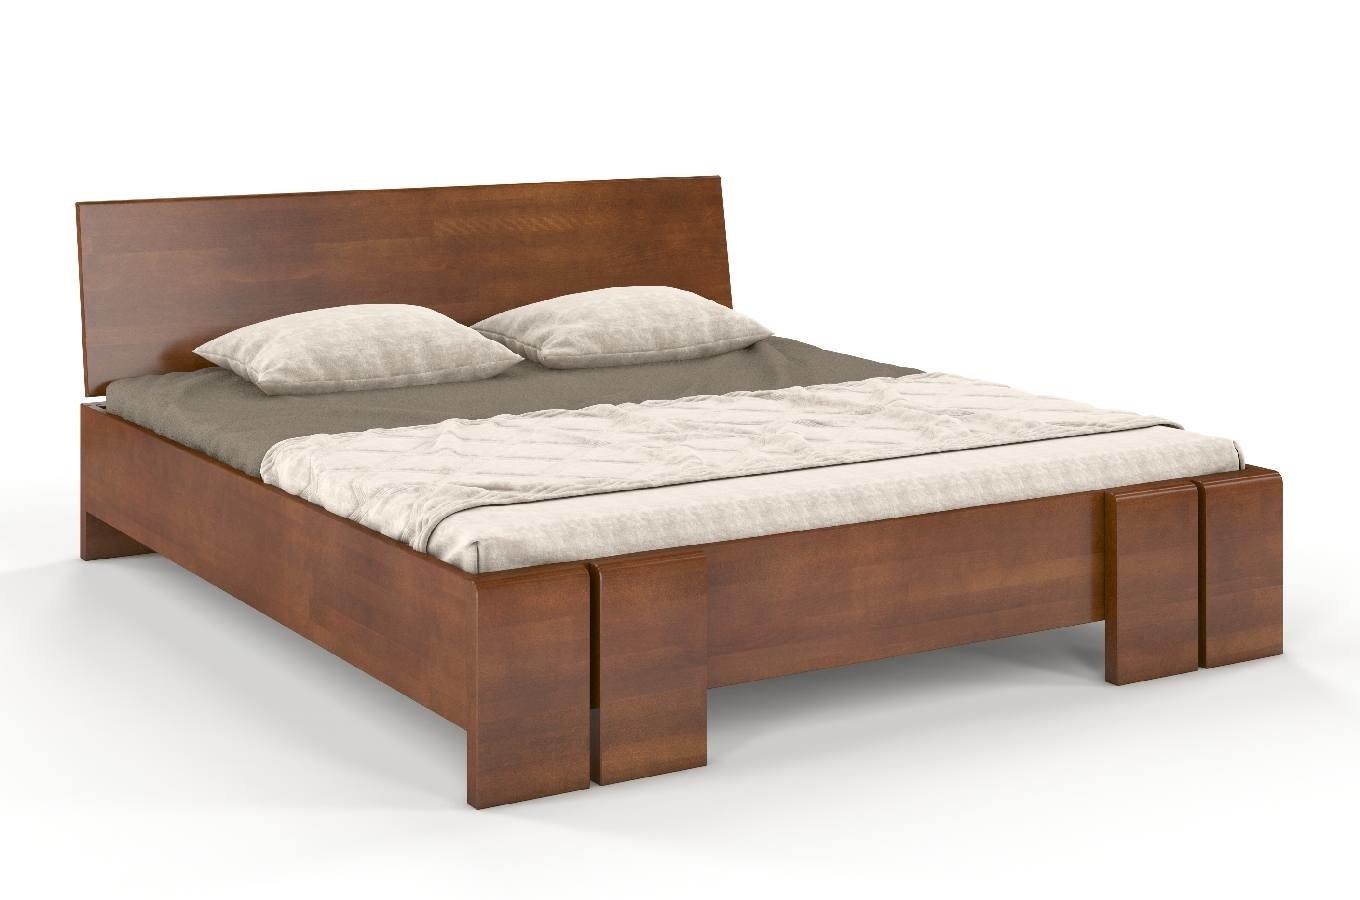 Łóżko drewniane bukowe ze skrzynią na pościel Skandica VESTRE Maxi & ST / 180x200 cm, kolor orzech